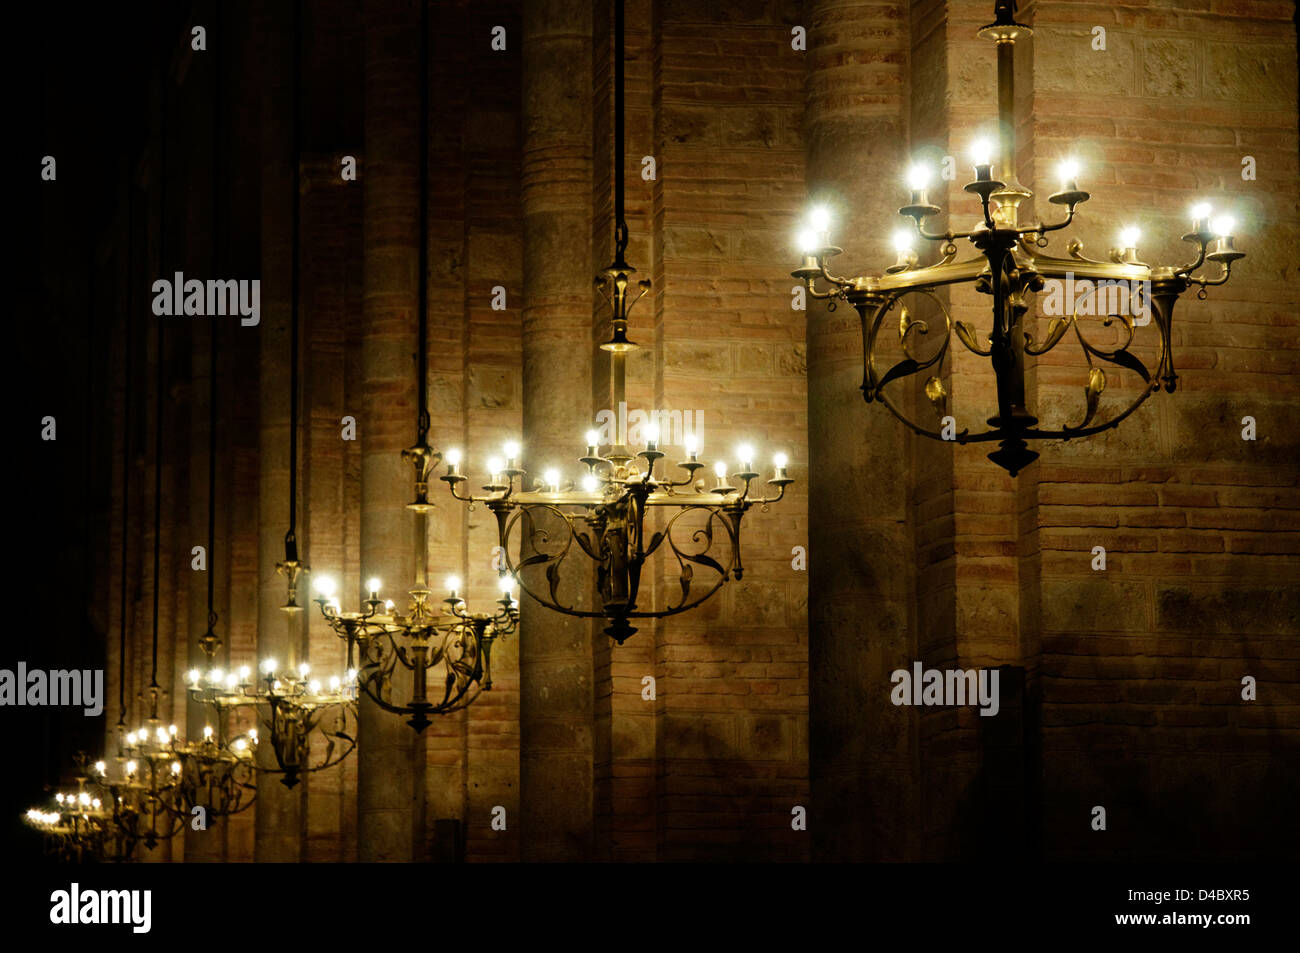 Lampadari nella St Sernin basilica di Tolosa Foto Stock